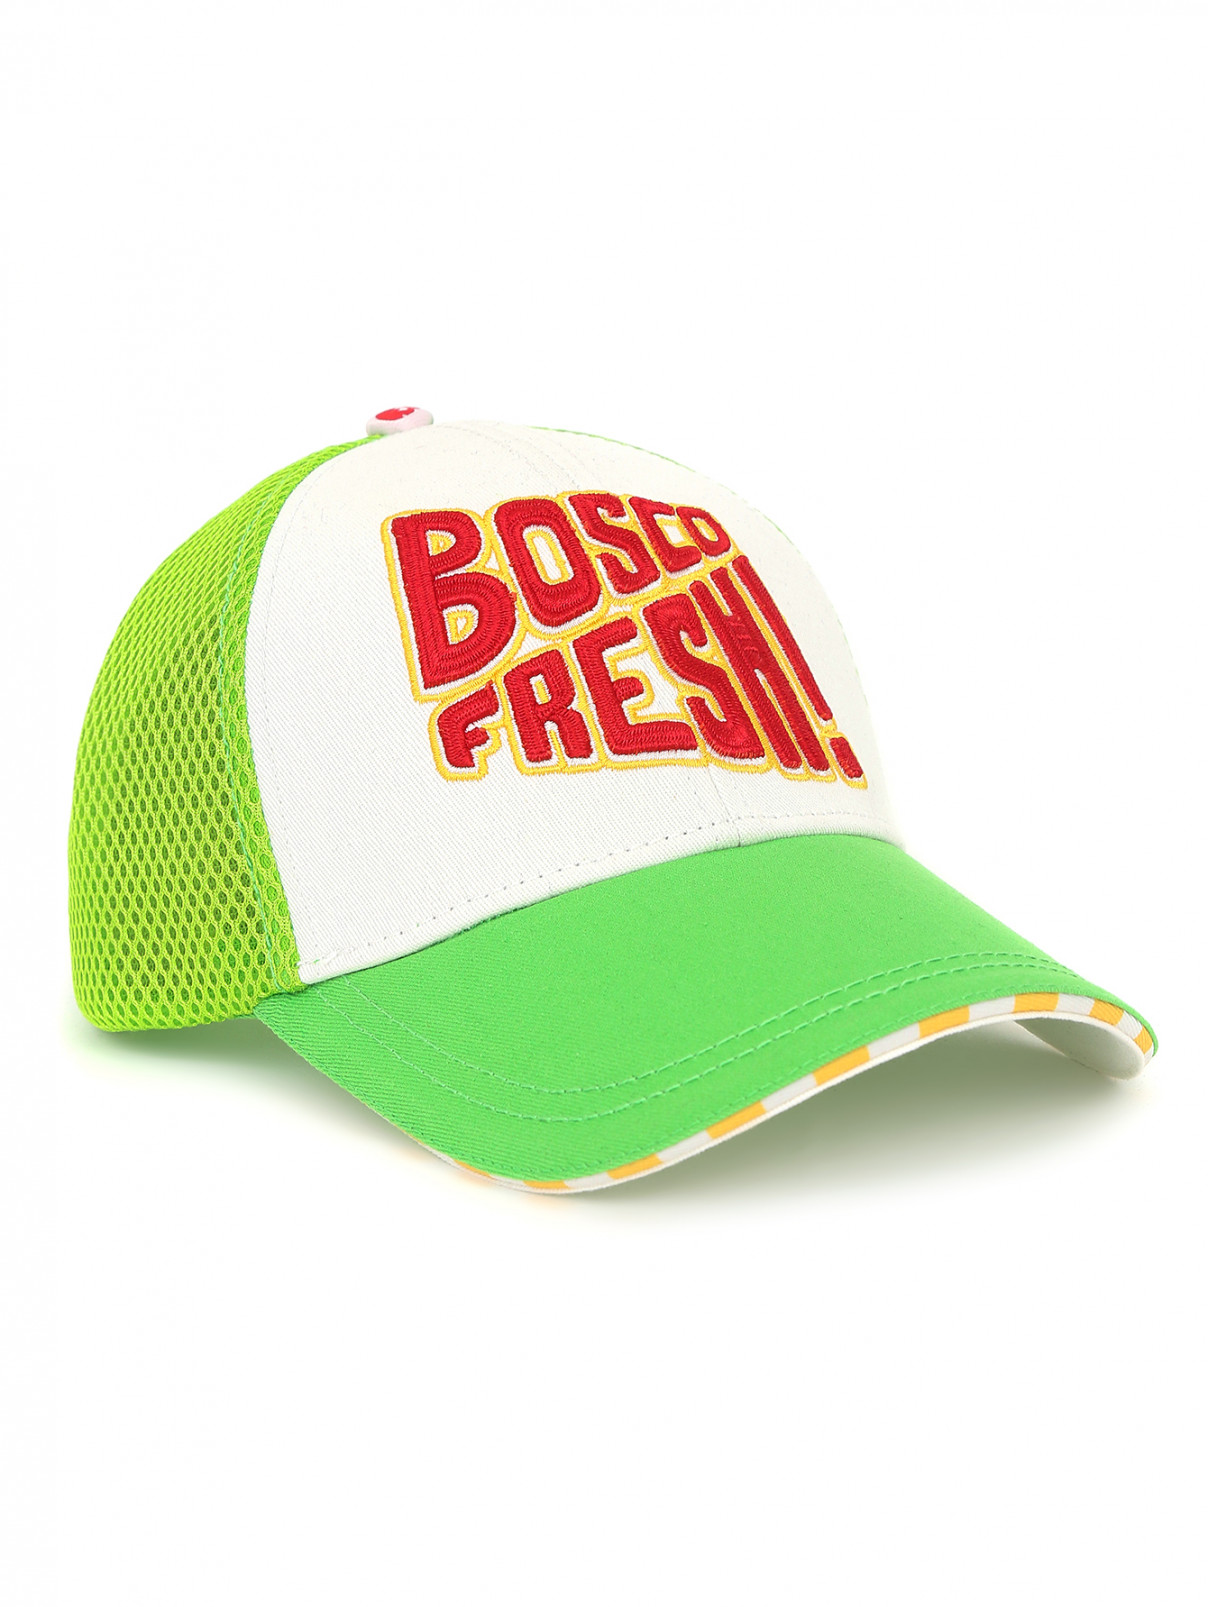 Бейсболка из хлопка с вышивкой BOSCO  –  Общий вид  – Цвет:  Зеленый